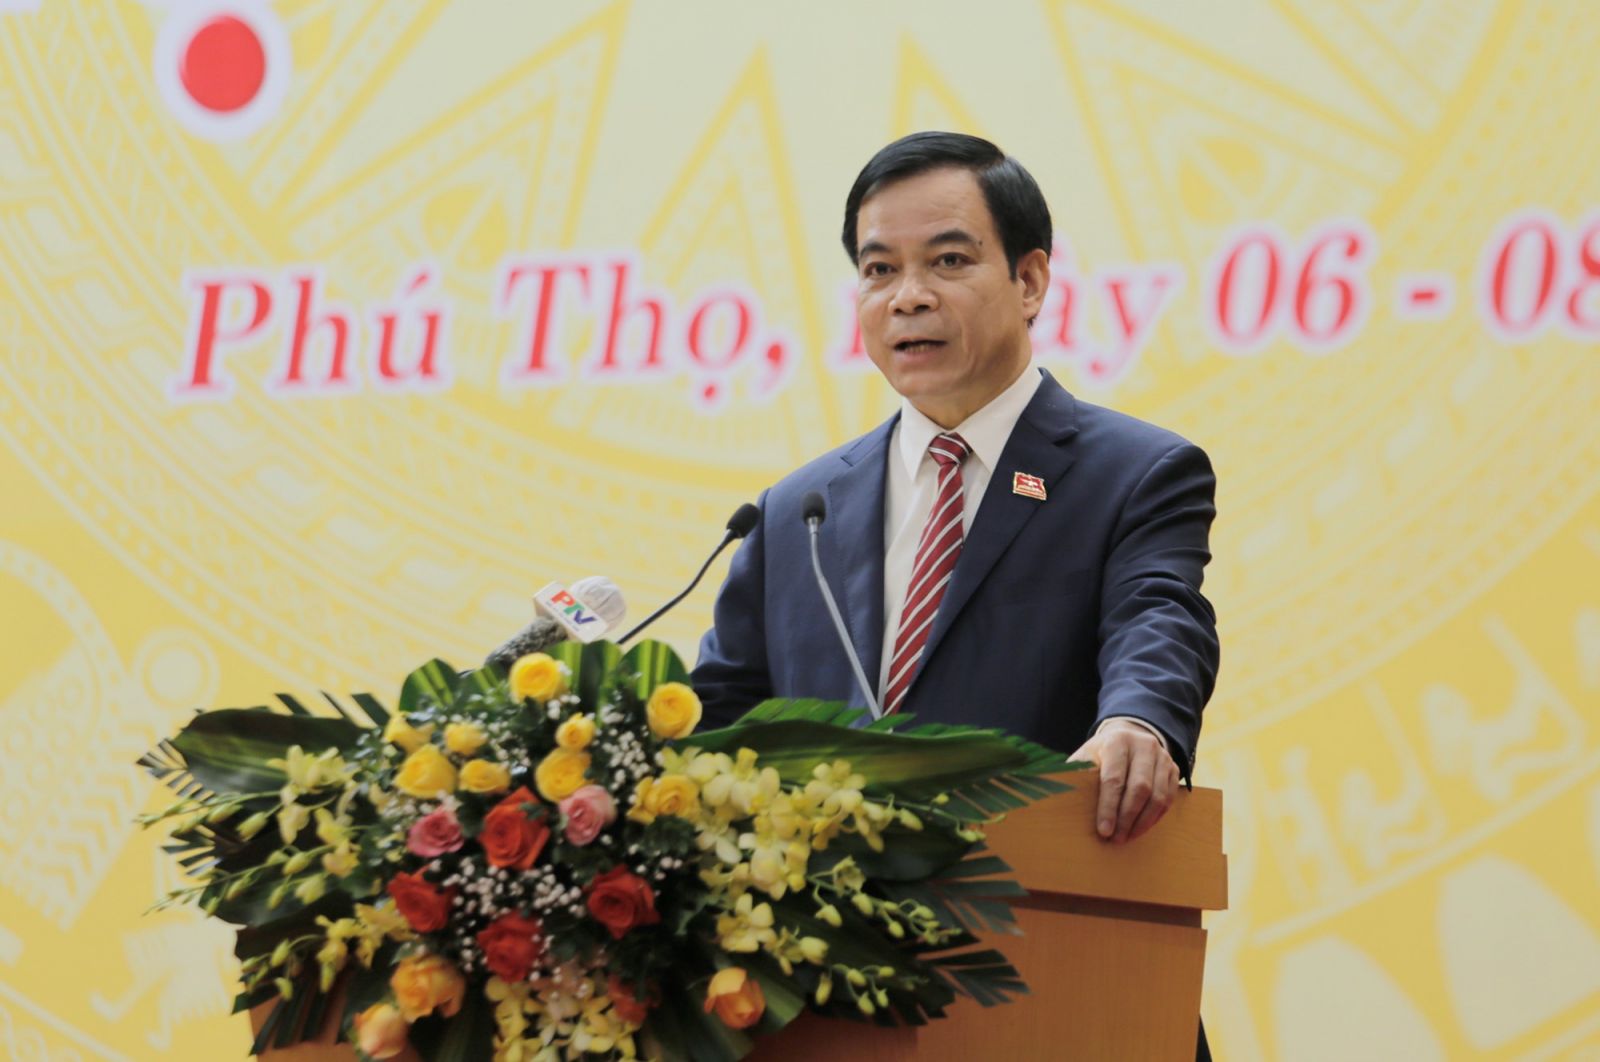 Đồng chí Nguyễn Thanh Hải - Phó Chủ tịch UBND tỉnh Phú Thọ trình bày báo cáo tình hình kinh tế - xã hội năm 2021 và công tác phòng chống dịch bệnh COVID-19 trên địa bàn tỉnh